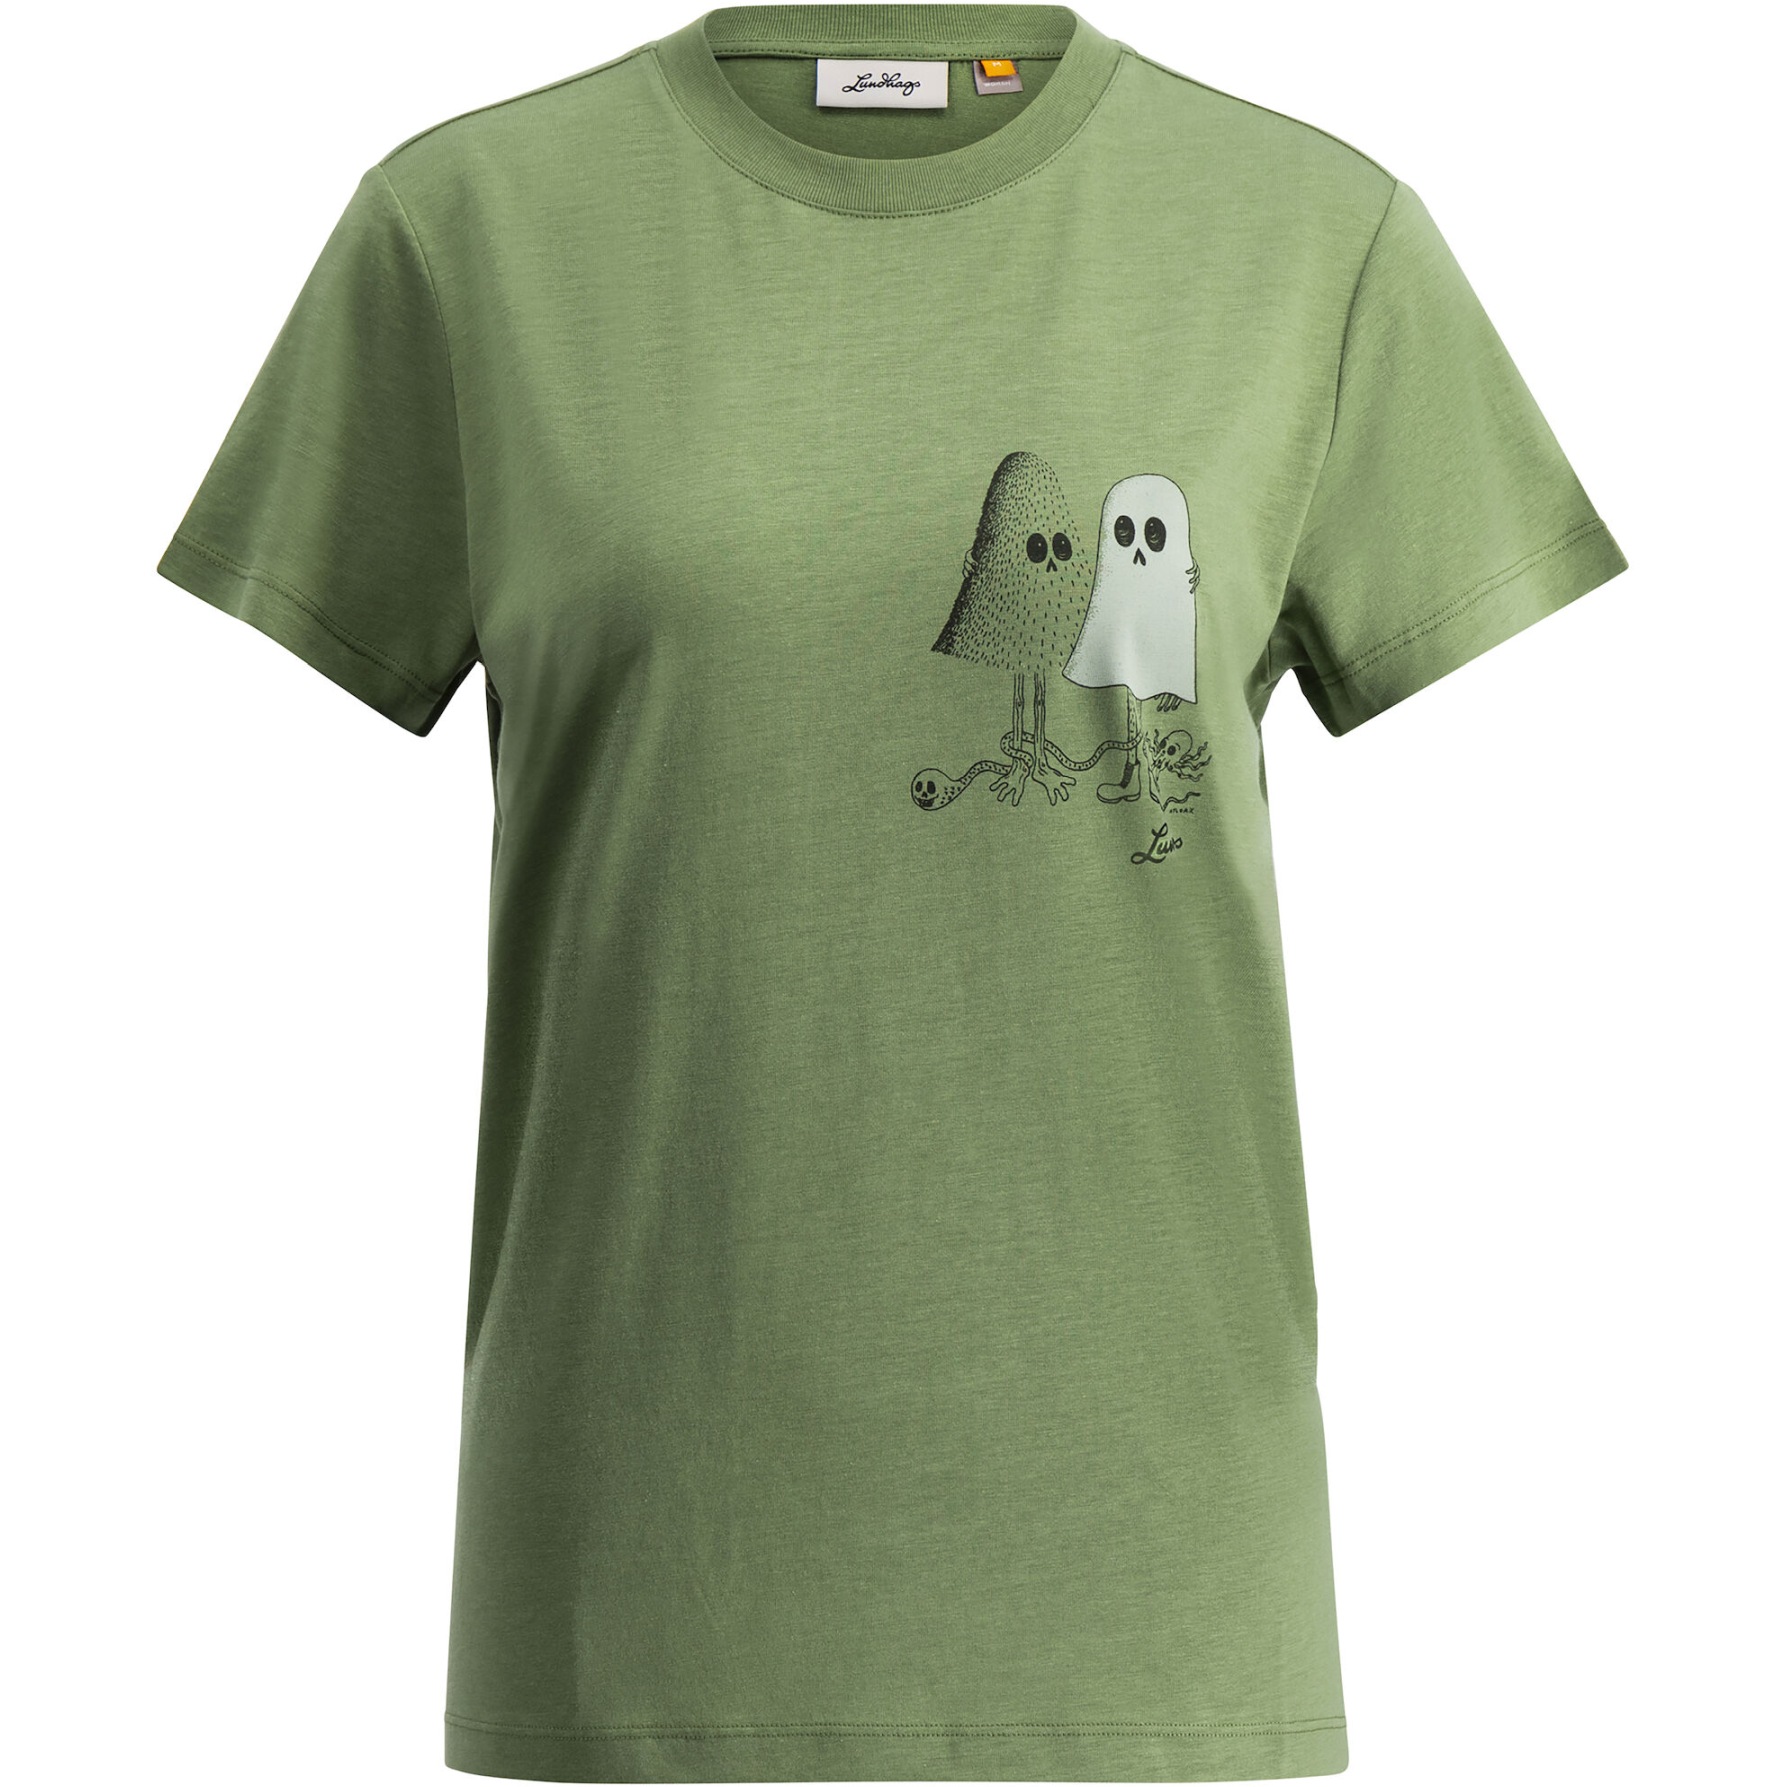 Produktbild von Lundhags Järpen Printed T-Shirt Damen - Birch Green 62000